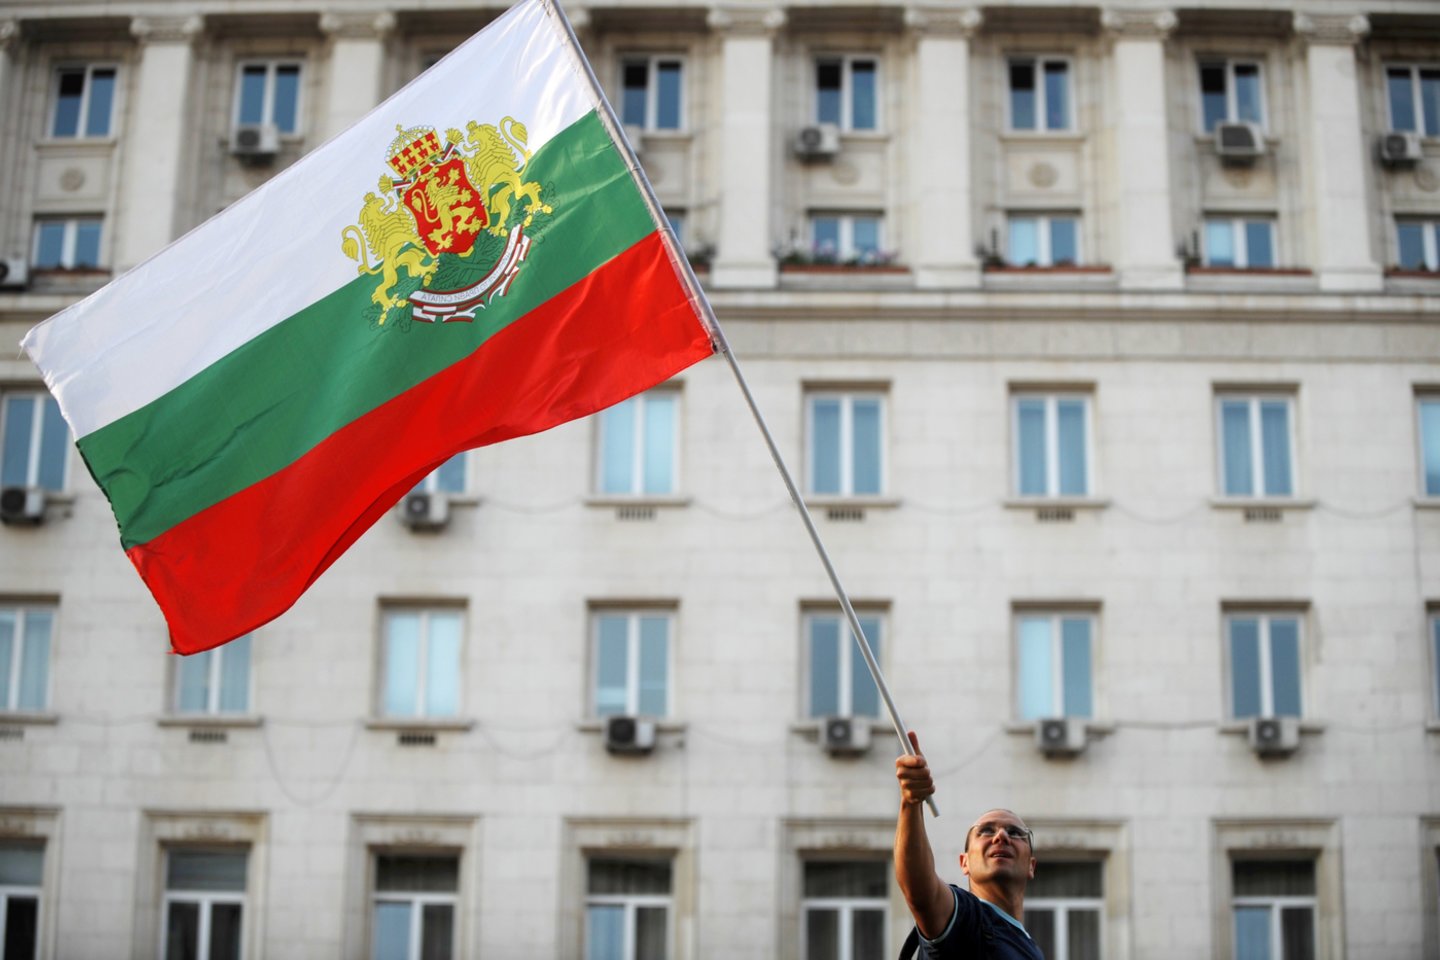  Bulgarijos prokurorai penktadienį pranešė, kad dar du Rusijos diplomatai šnipinėjo šią Europos Sąjungos narę, nepraėjus nė trims mėnesiams po kito rusų pasiuntinio išsiuntimo dėl panašių kaltinimų.  <br>AFP/Scanpix nuotr.